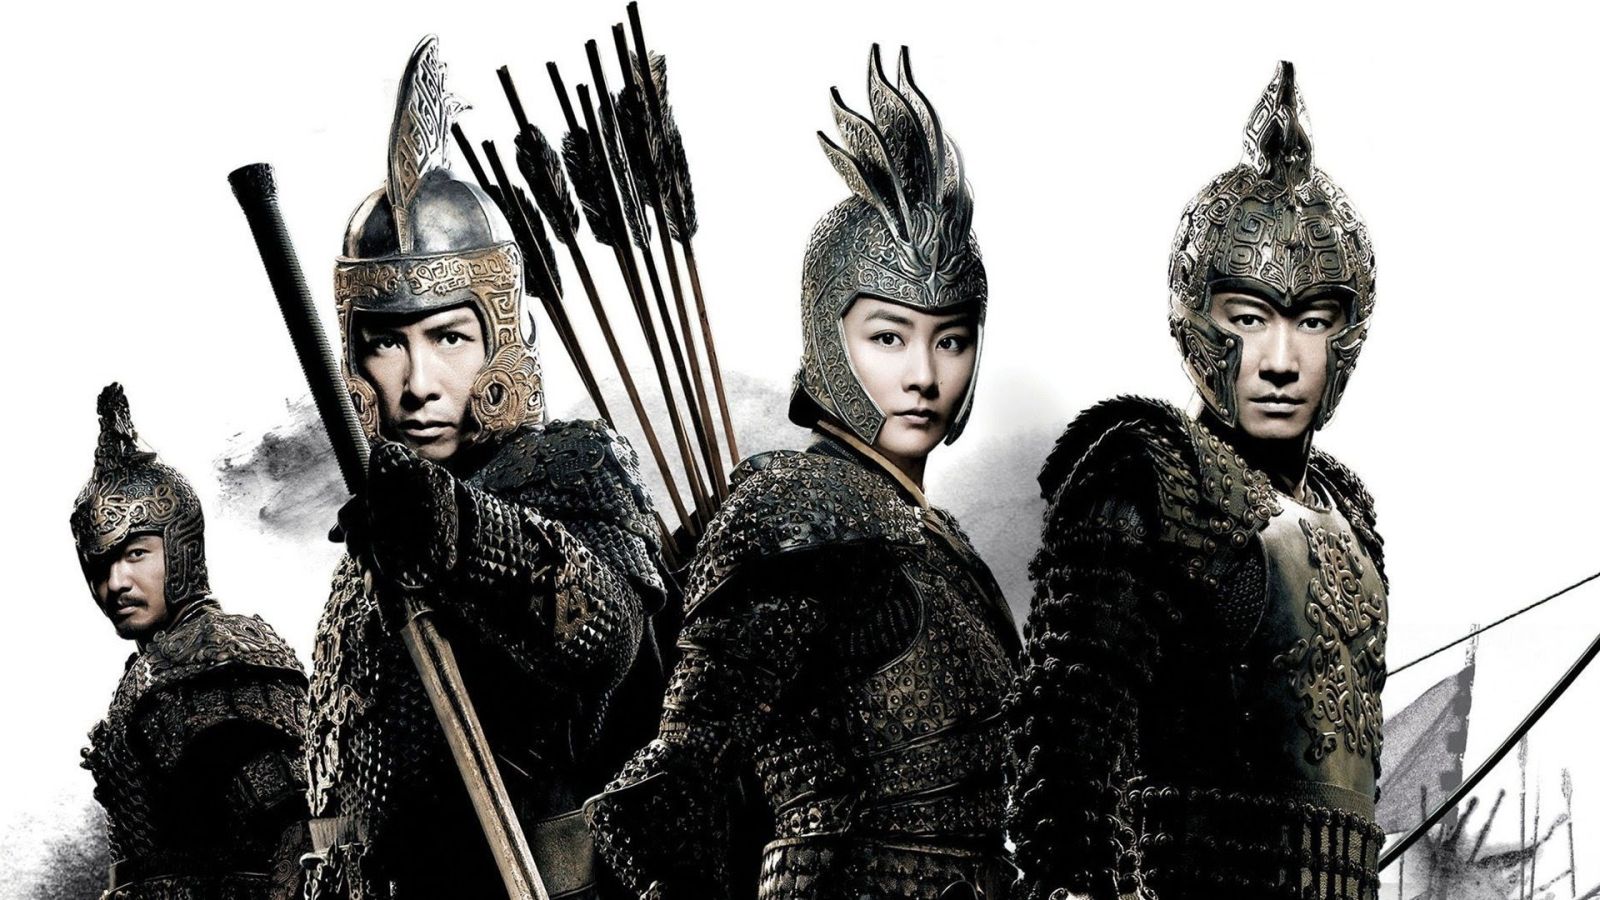 Giang Sơn Mỹ Nhân - An Empress and the Warriors